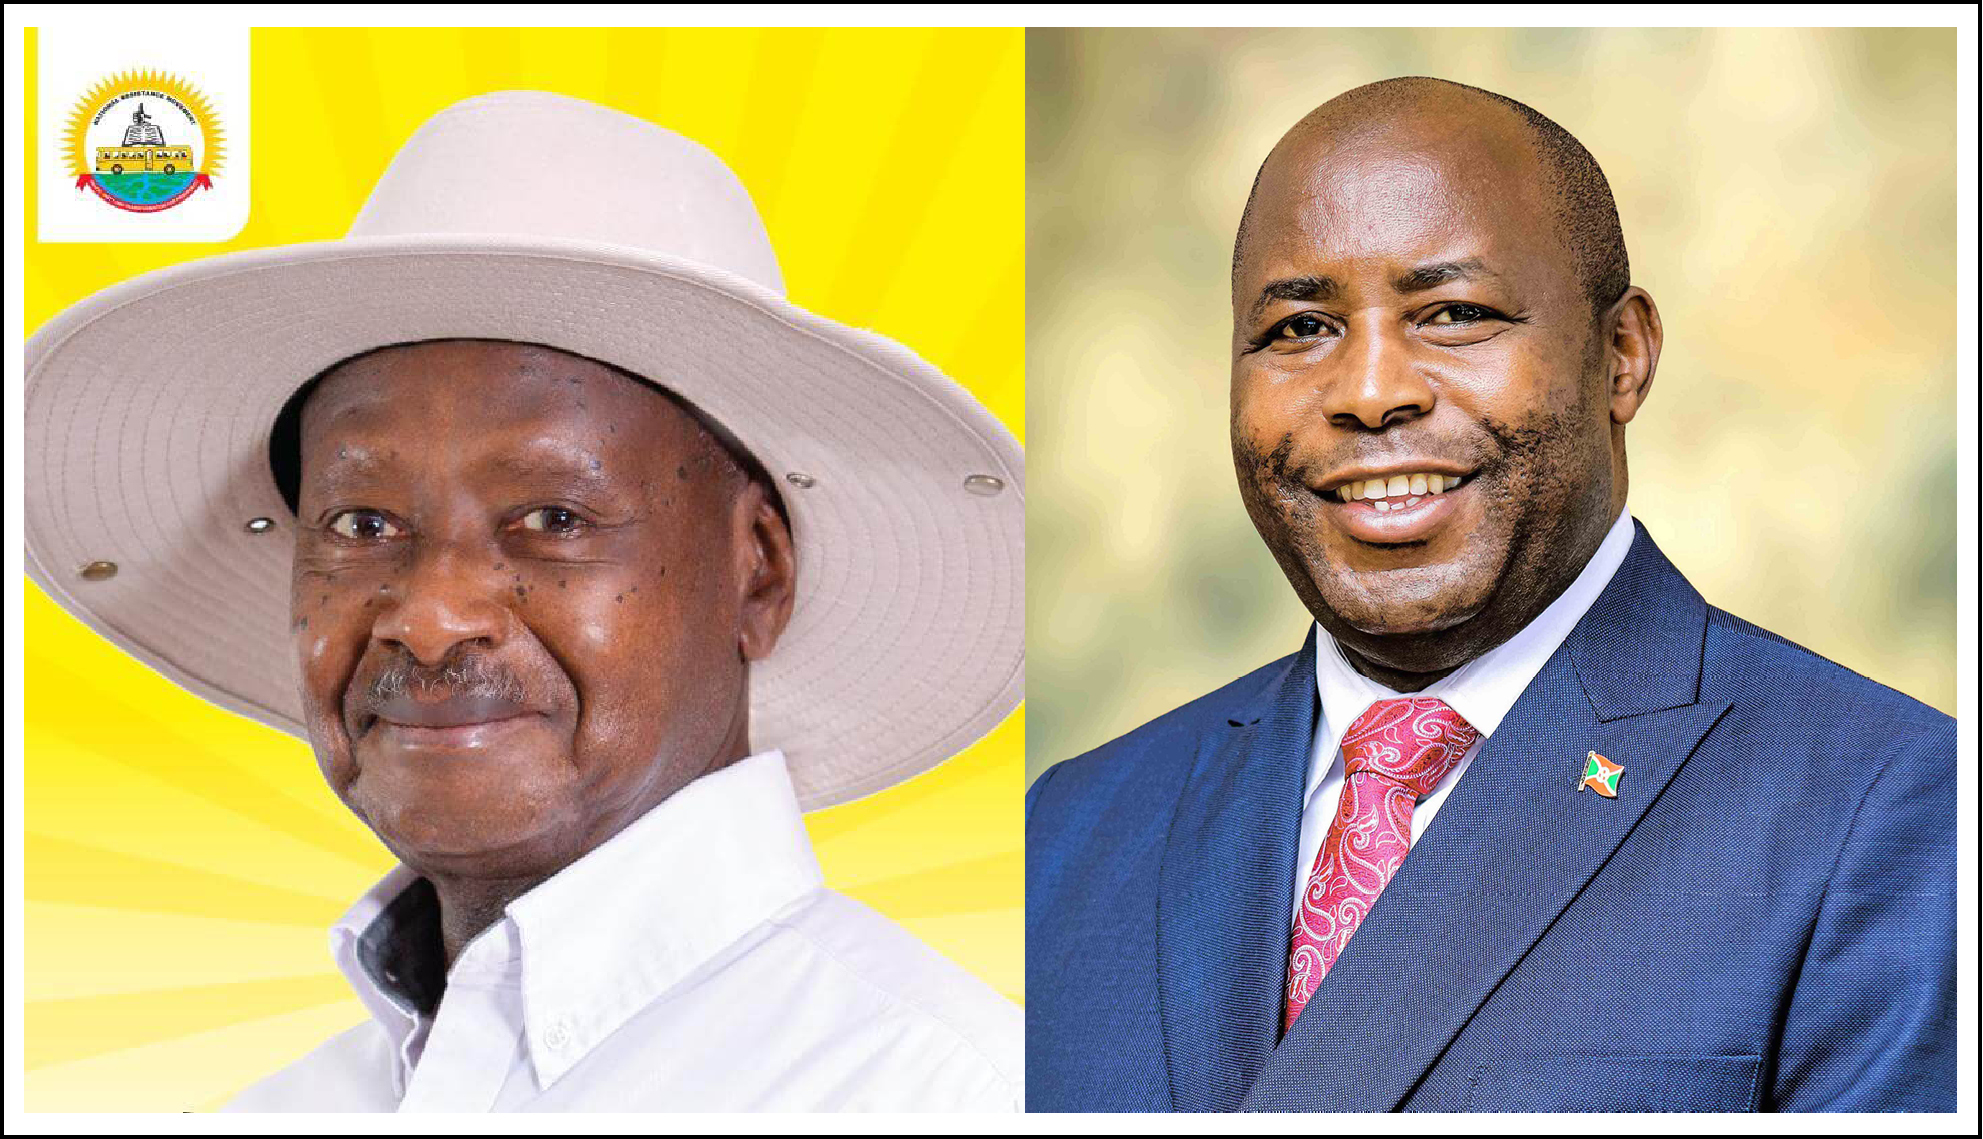 Les Chefs D’Etat Burundais et Ougandais satisfaits de la production agricole dans leurs pays respectifs